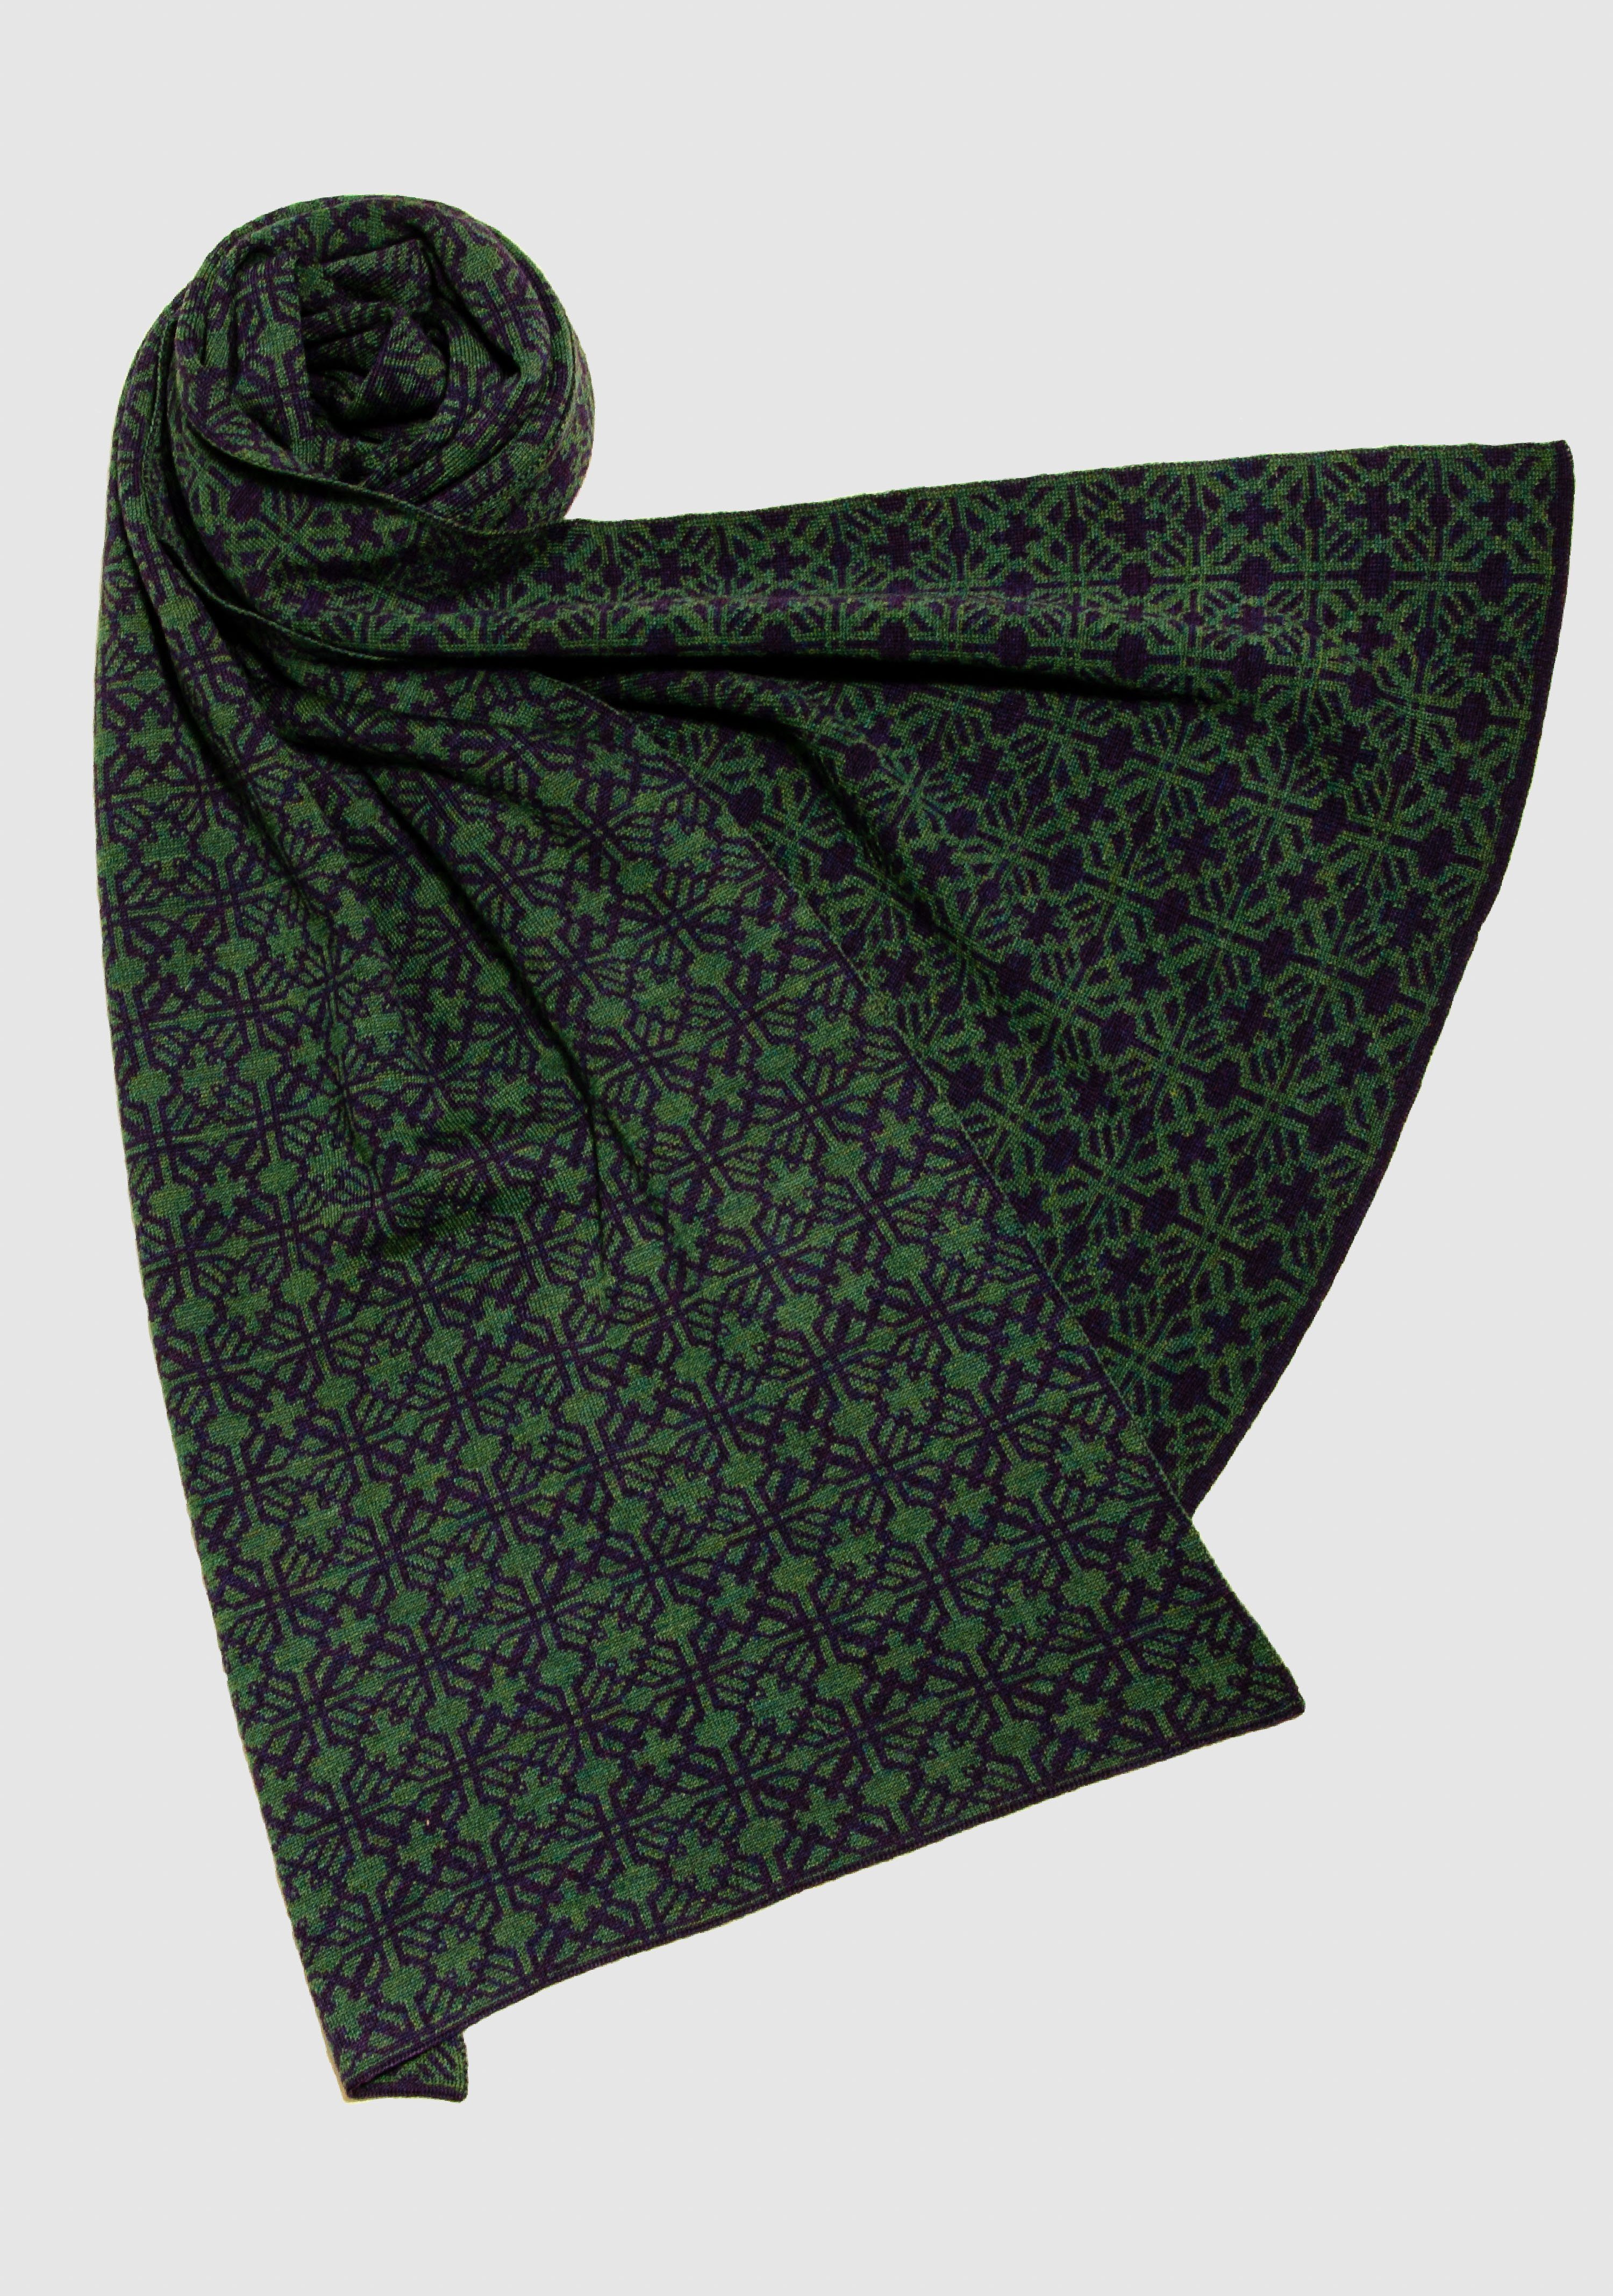 LANARTO slow fashion Wollschal Schal in Farben extrasoft schönen 100% Irland purpur_schilf Merino